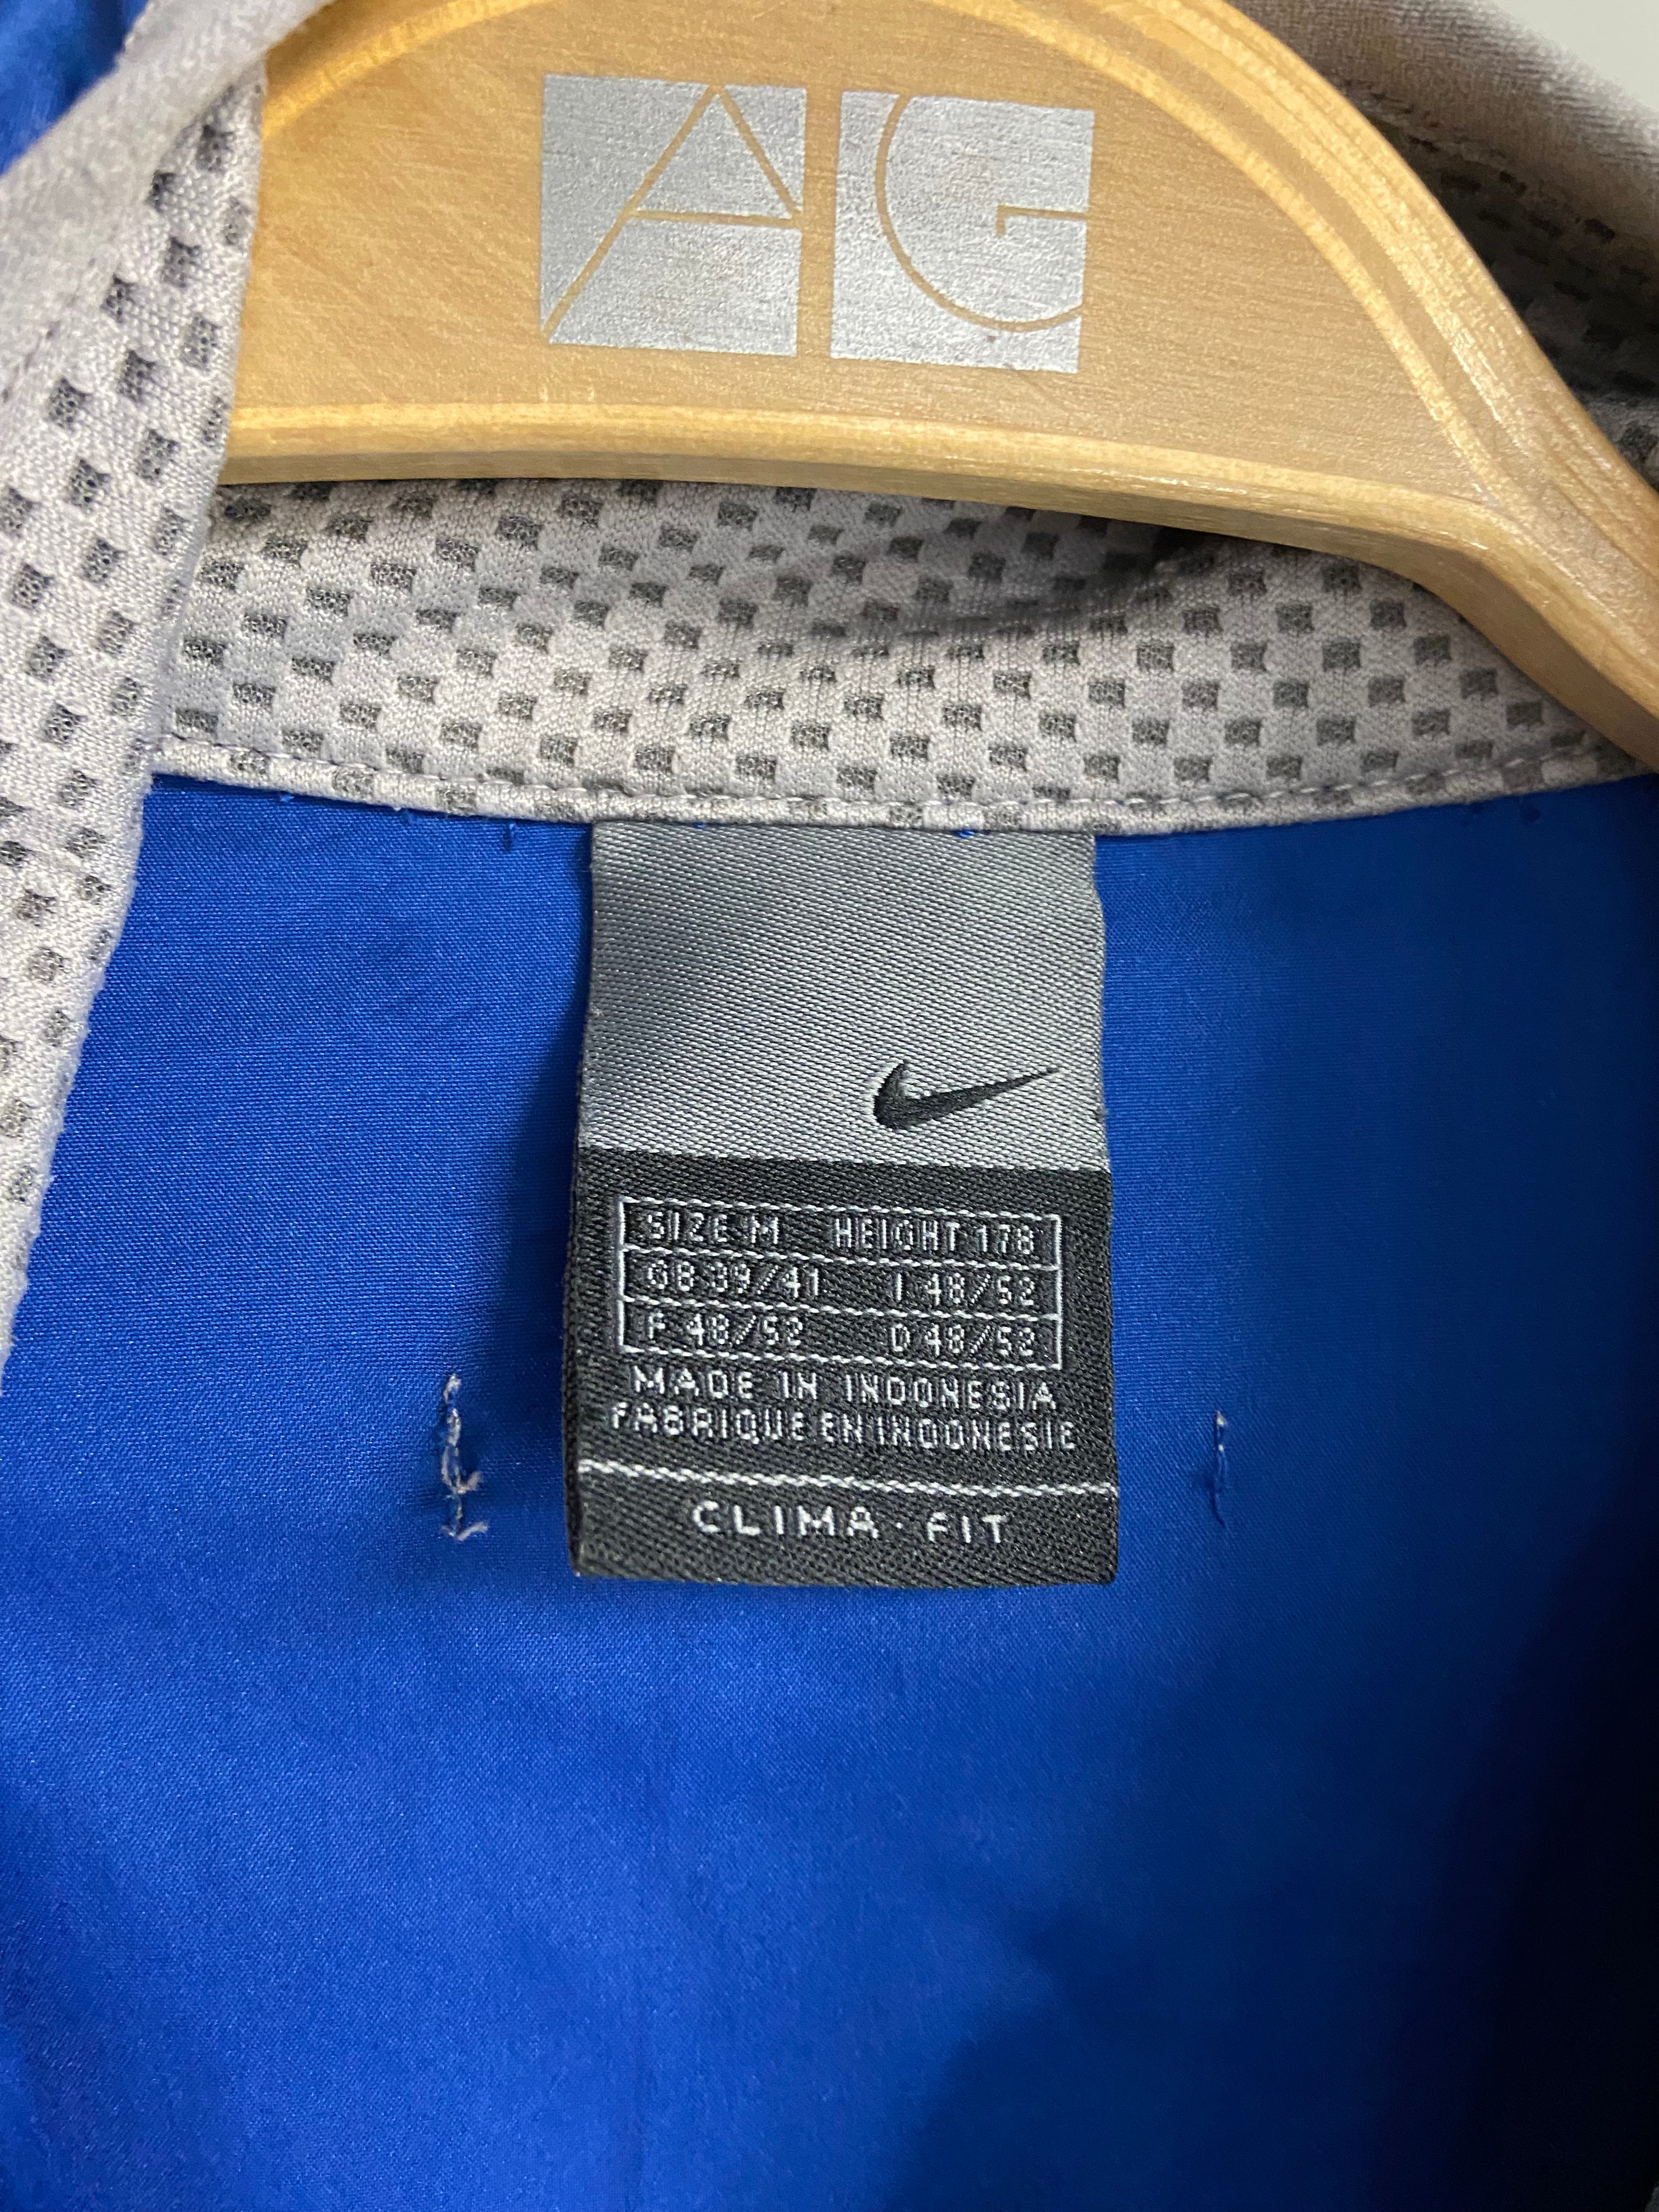 Vintage Nike Blue Comfort Fit Jacket M Mens Polyester